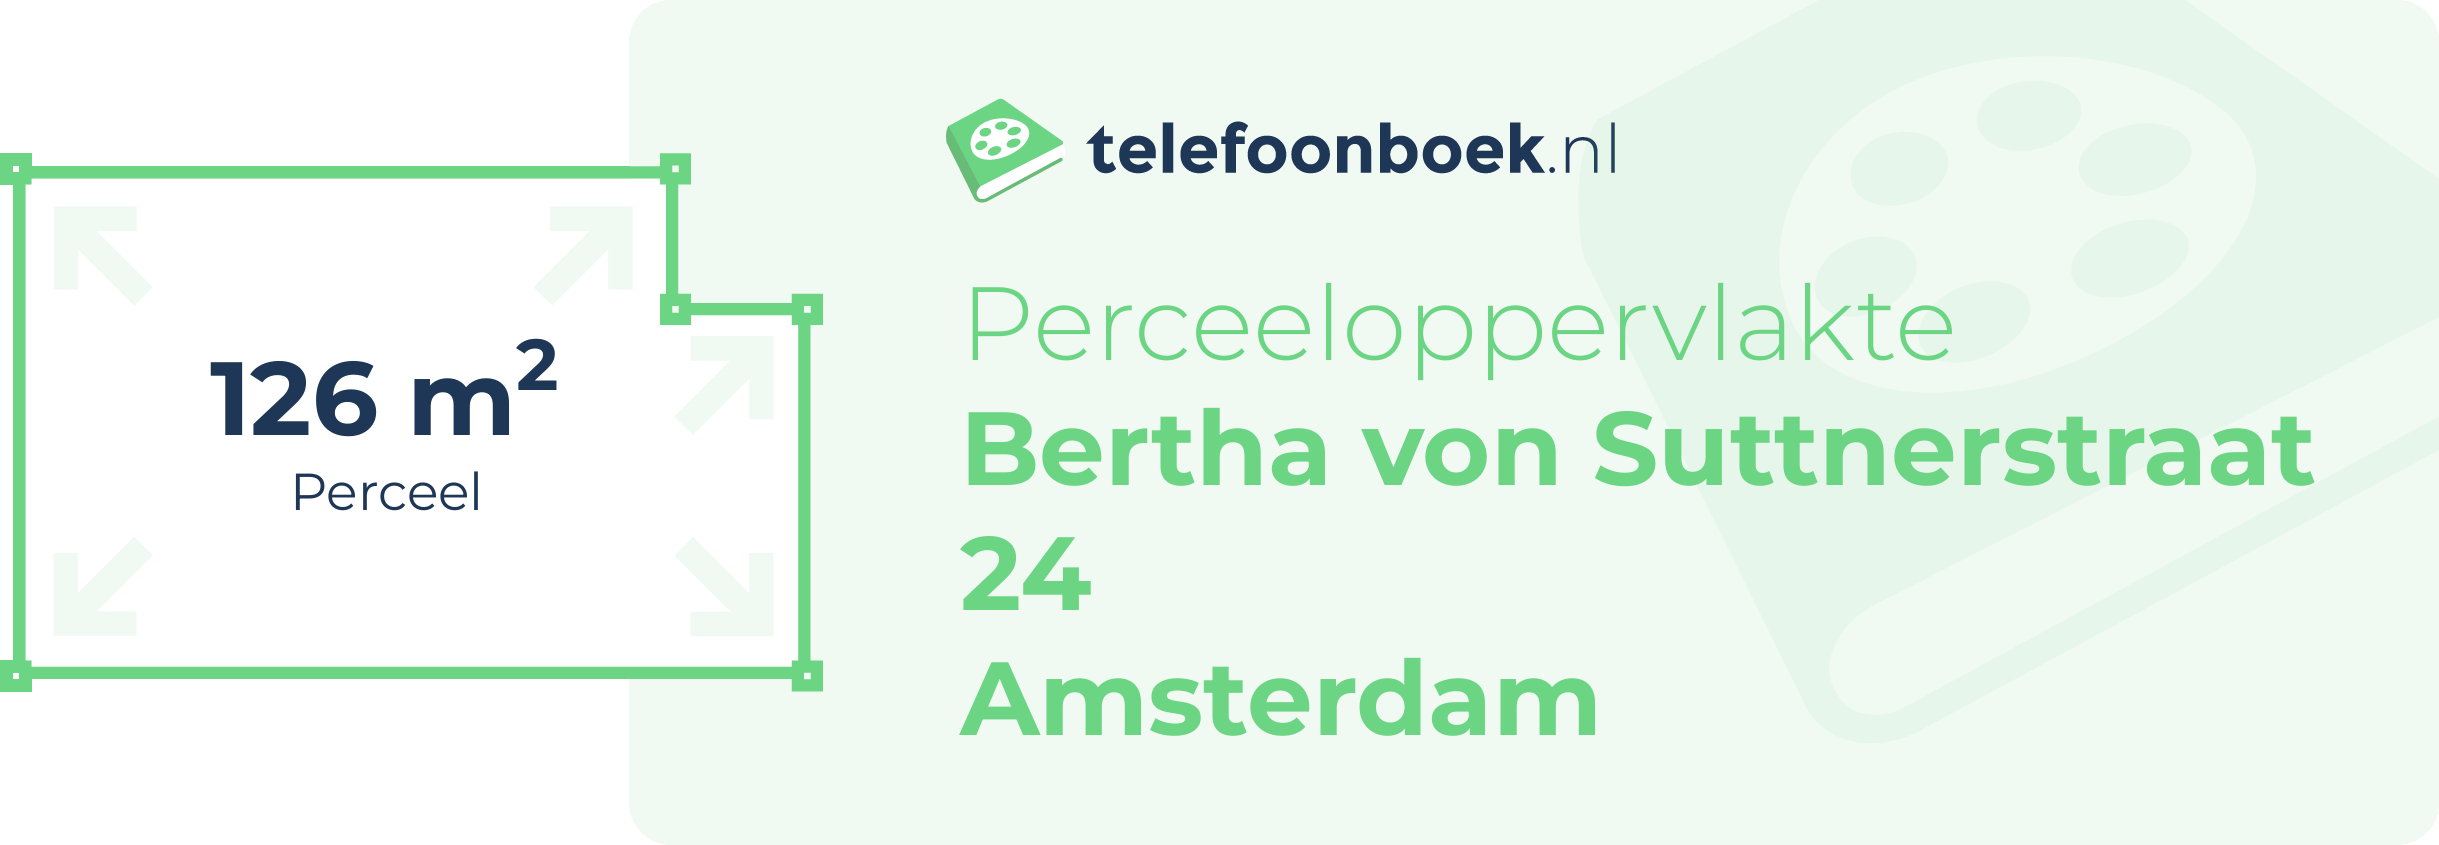 Perceeloppervlakte Bertha Von Suttnerstraat 24 Amsterdam